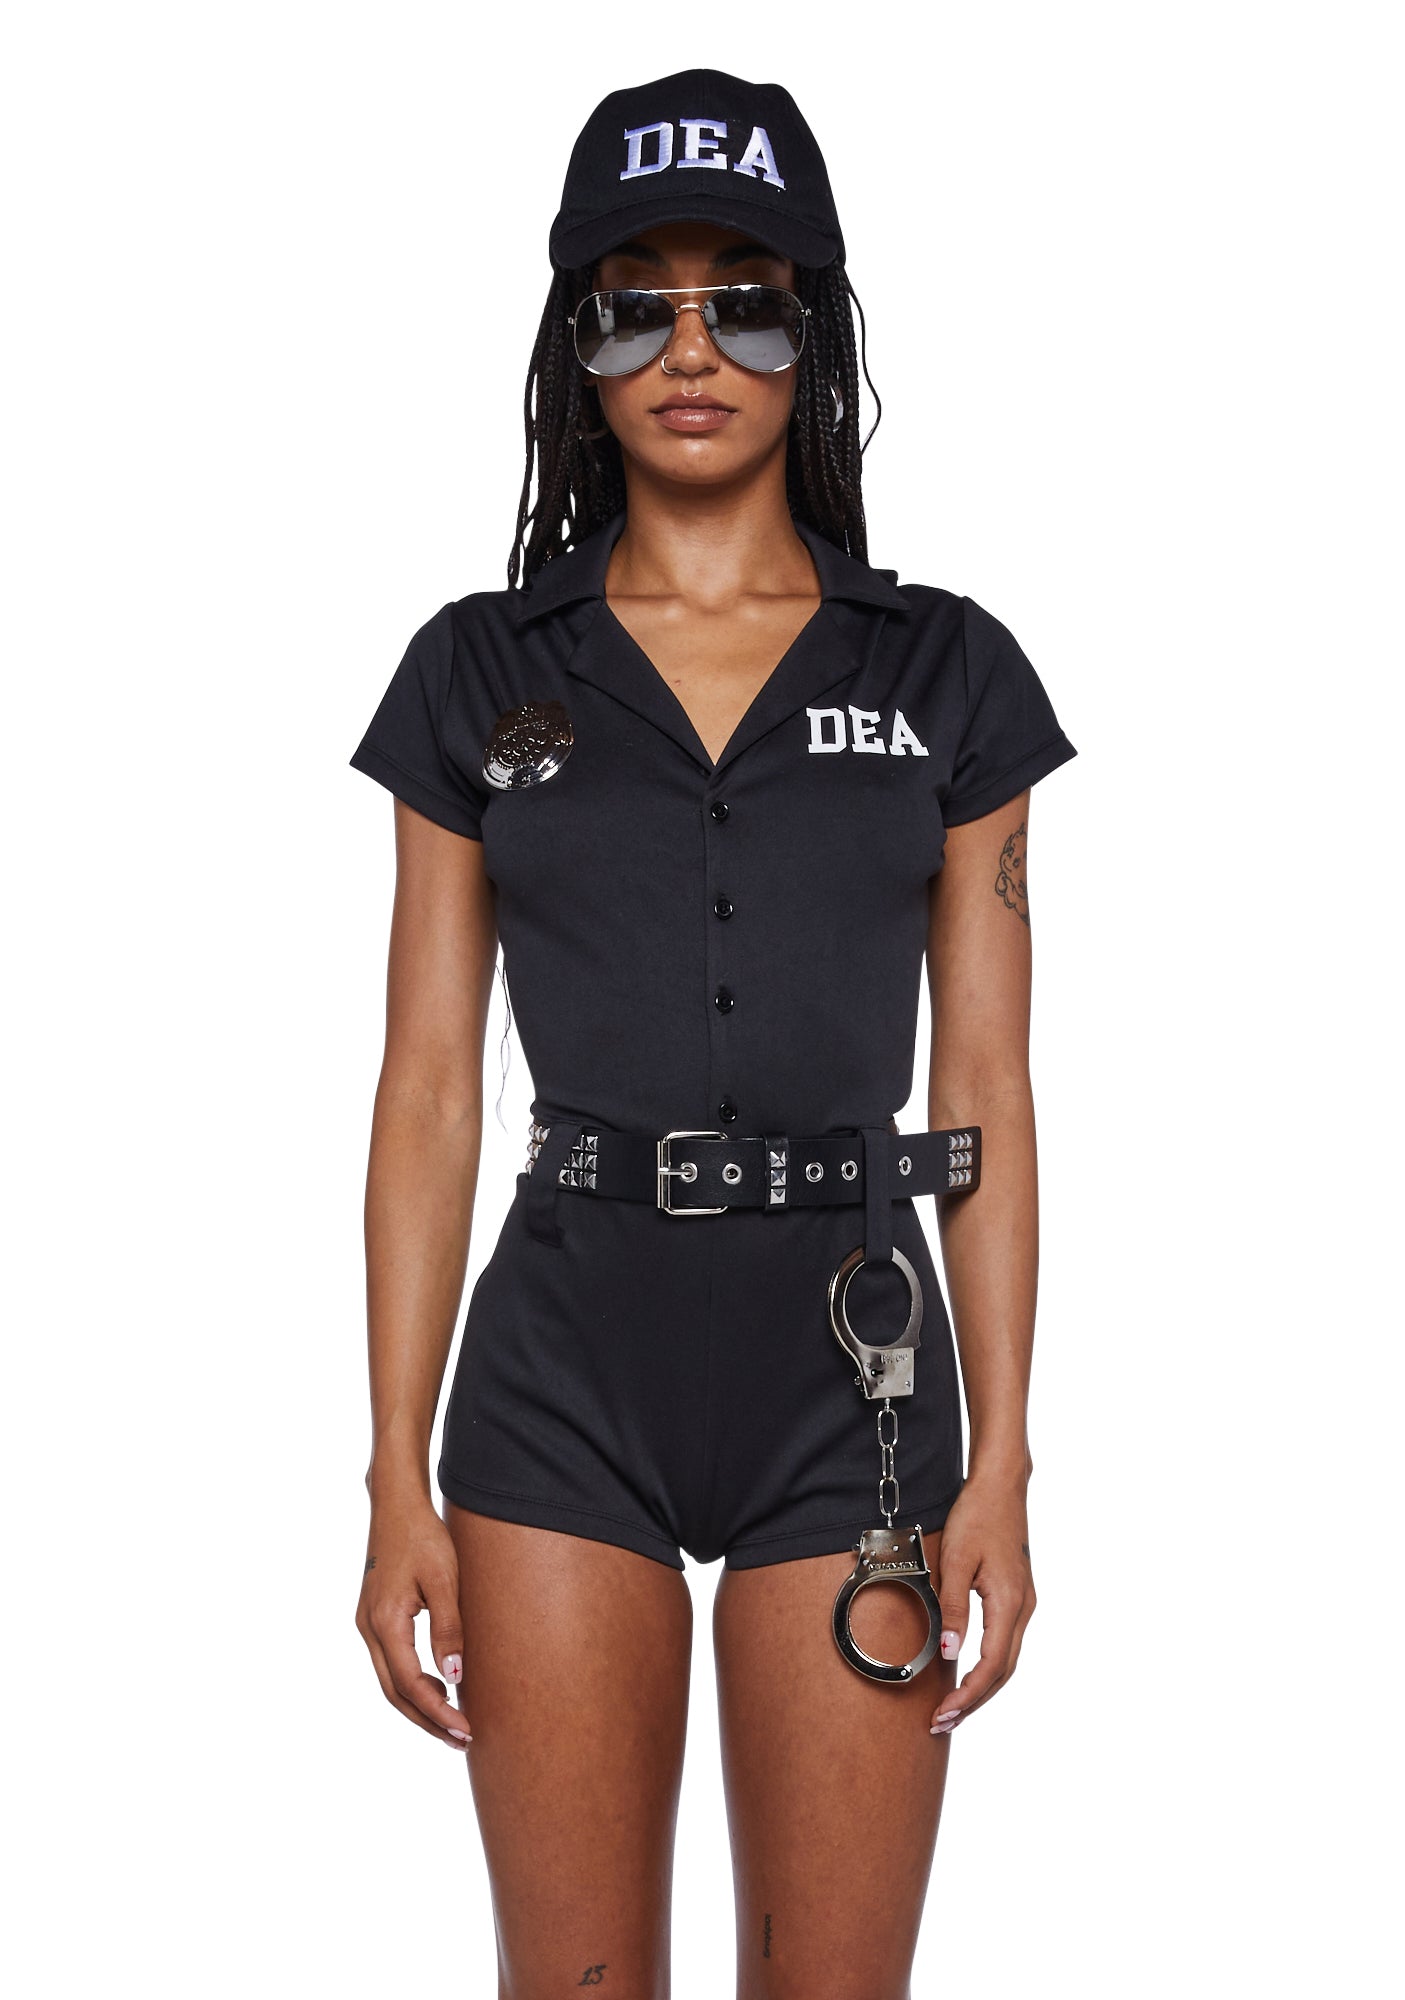 Trickz N Treatz Sexy DEA Officer Costume - Black – Dolls Kill